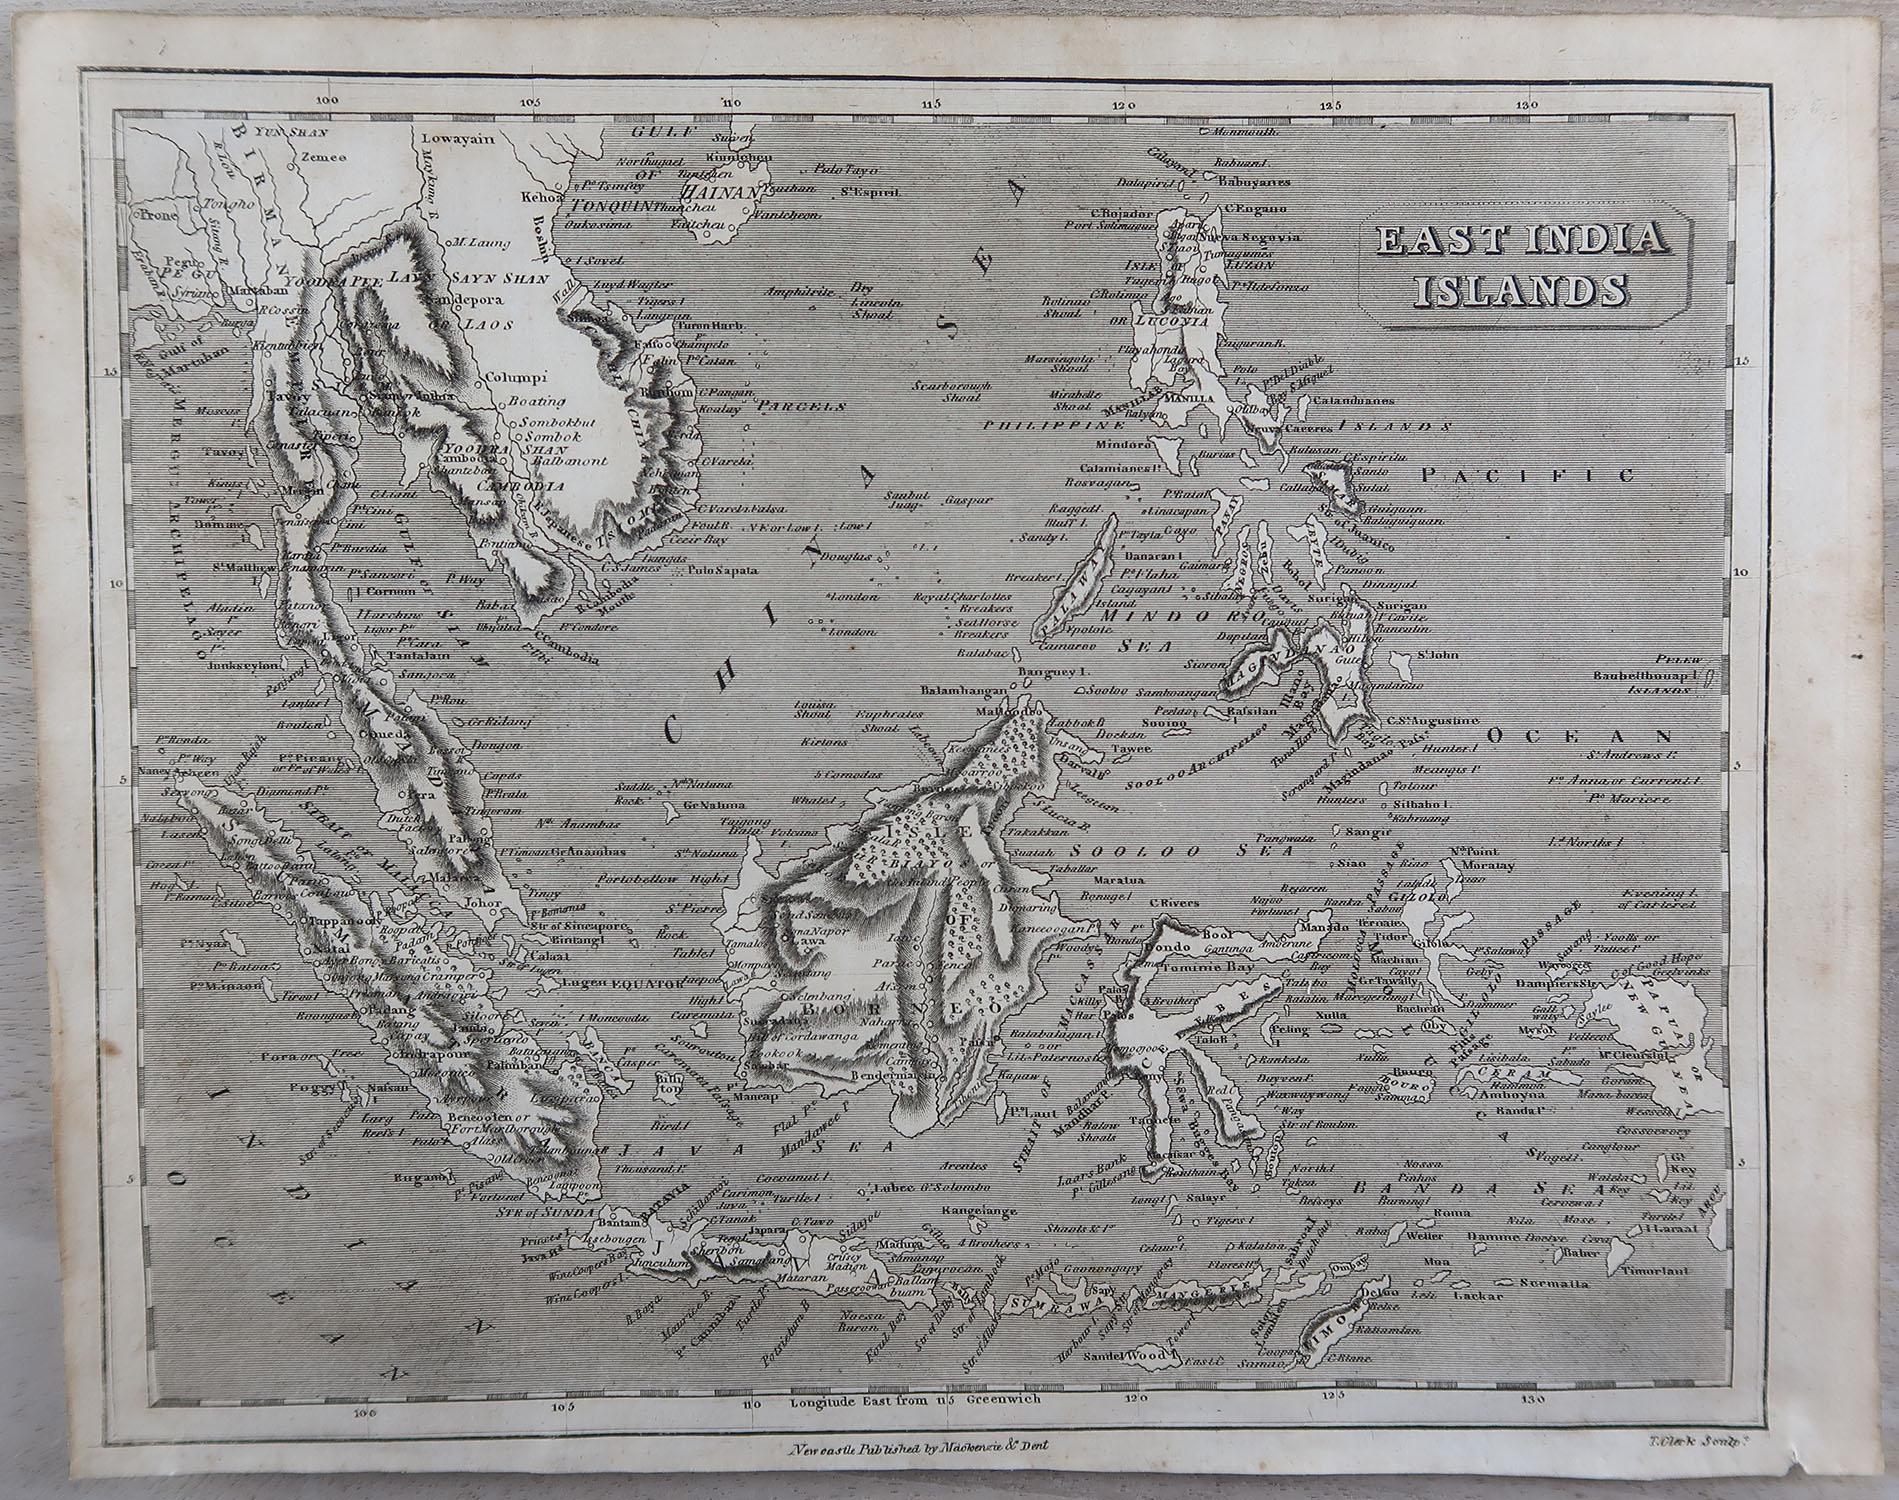 Grande carte de l'Asie du Sud-Est

Gravure sur cuivre

Dessiné et gravé par Thomas Clerk, Édimbourg.

Publié par Mackenzie et Dent, 1817

Non encadré.